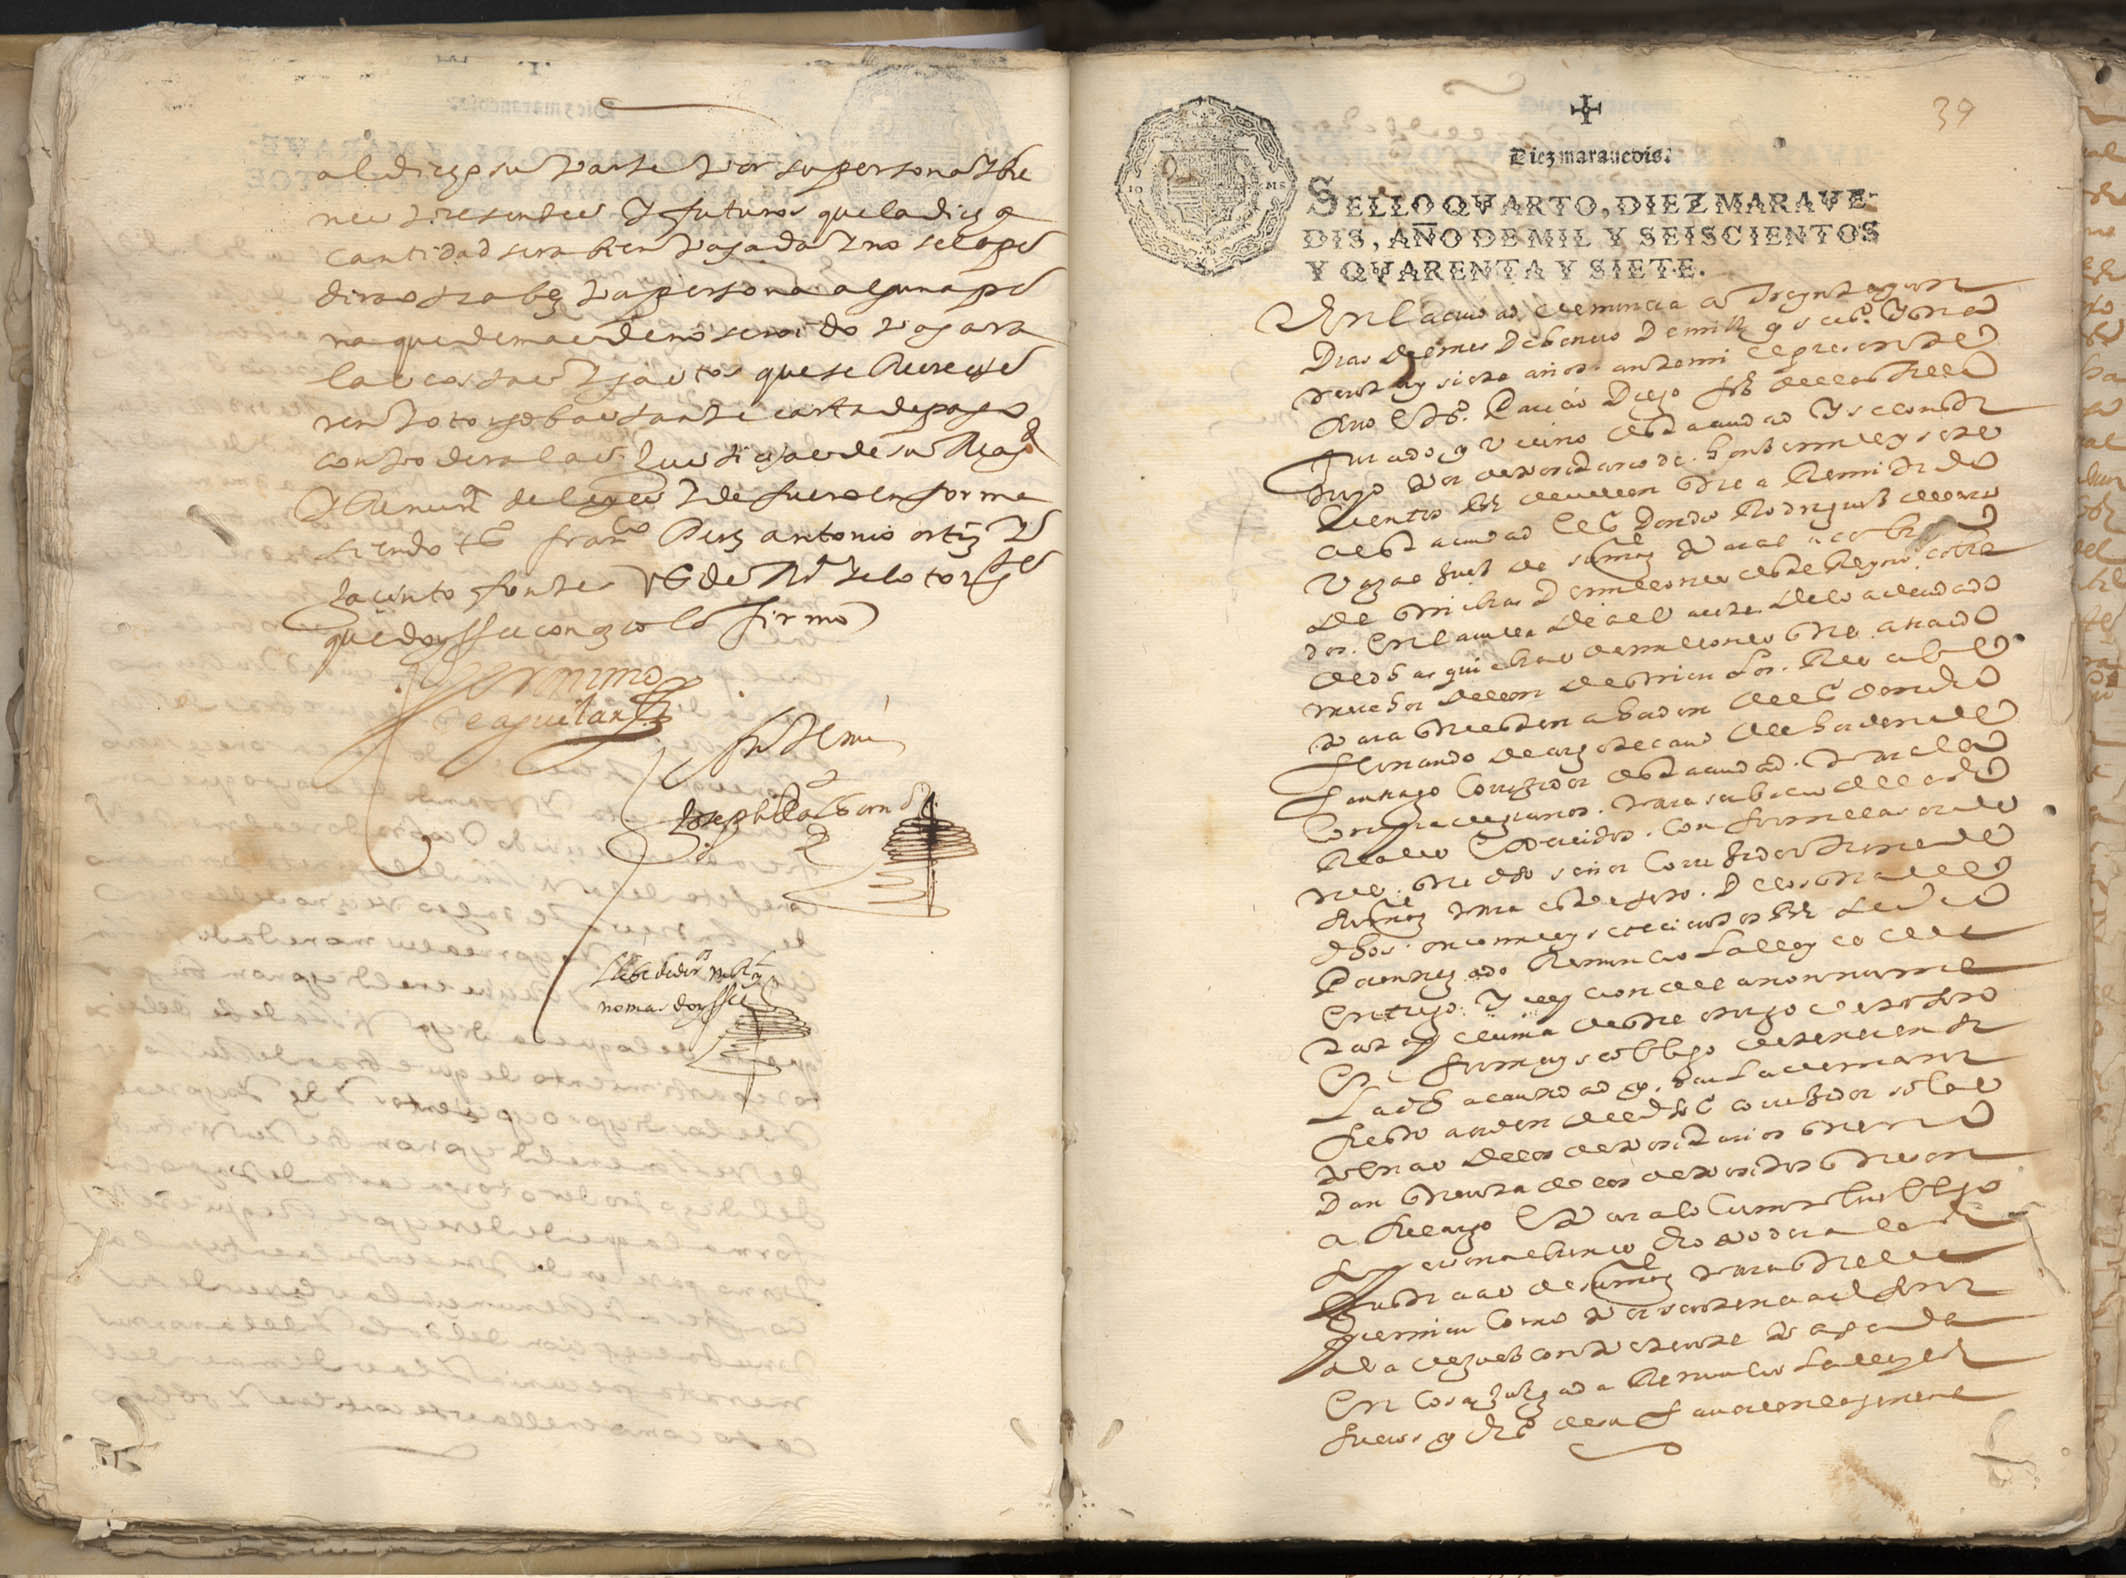 Registro de José Albornoz, Murcia de 1647-1648.